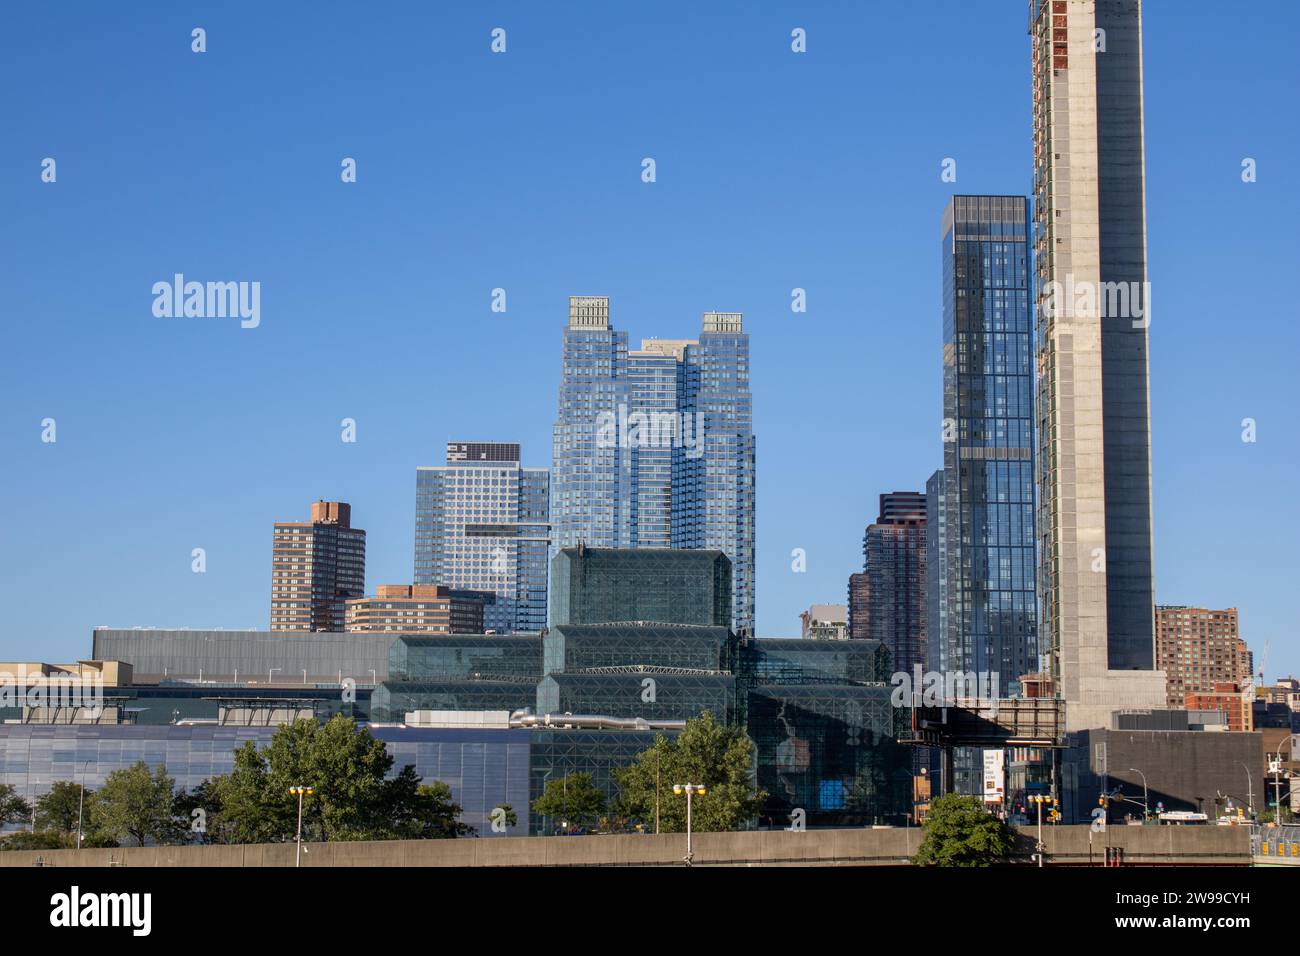 Une imposante tour de l'horloge est située derrière un grand bâtiment dans une ville animée, offrant une perspective unique du paysage urbain Banque D'Images